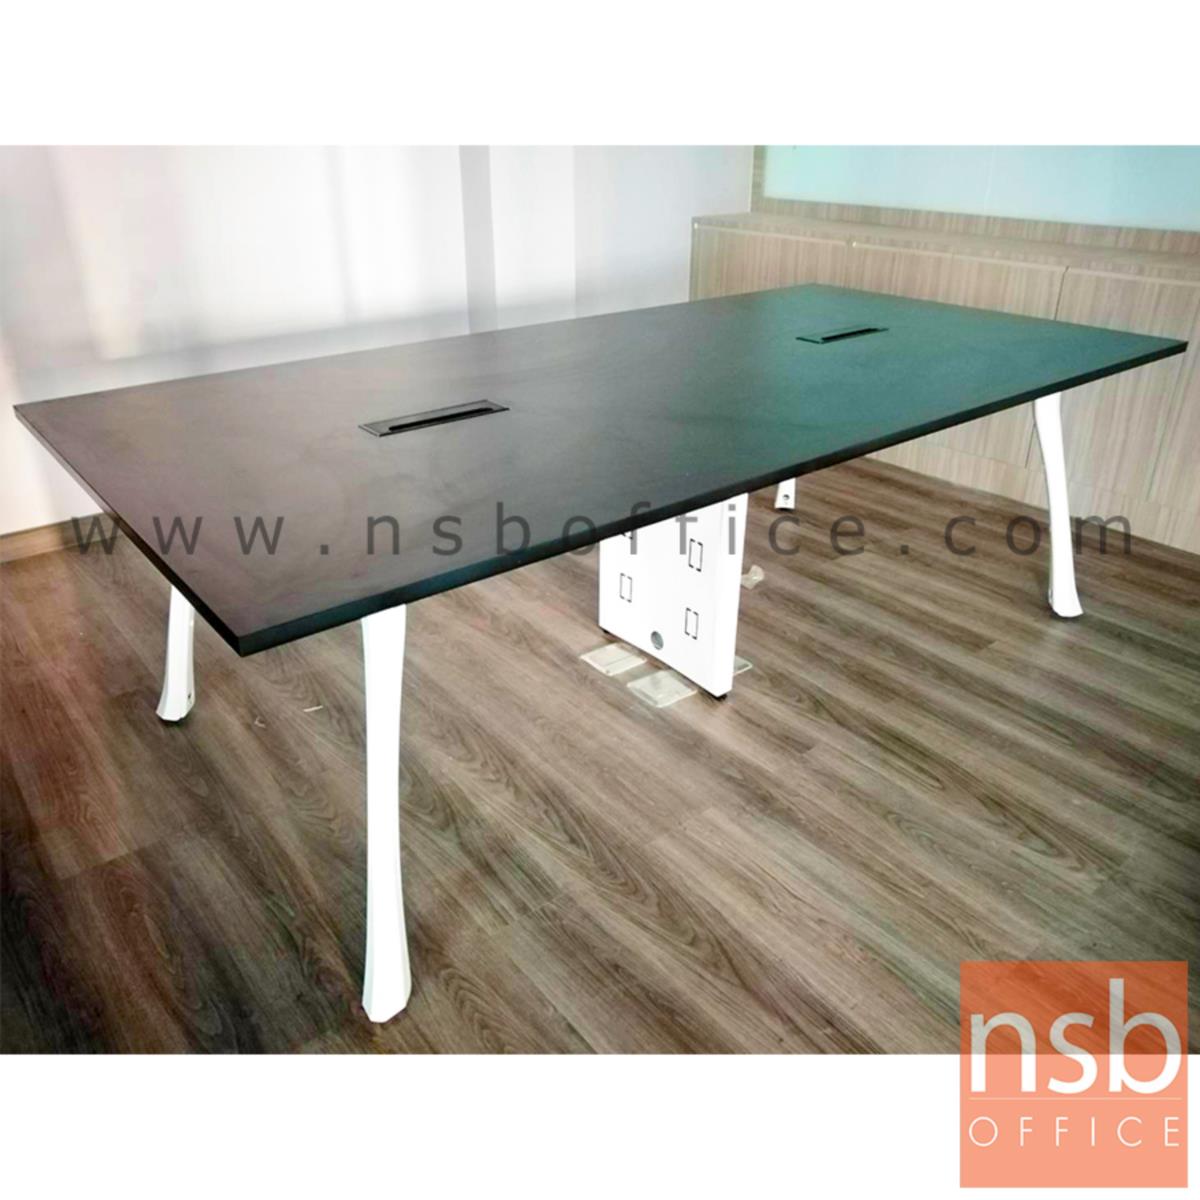 โต๊ะประชุมทรงสี่เหลี่ยม  รุ่น Kelland (เคลแลนด์) ขนาด 240W cm. ขาเหล็กสีขาว